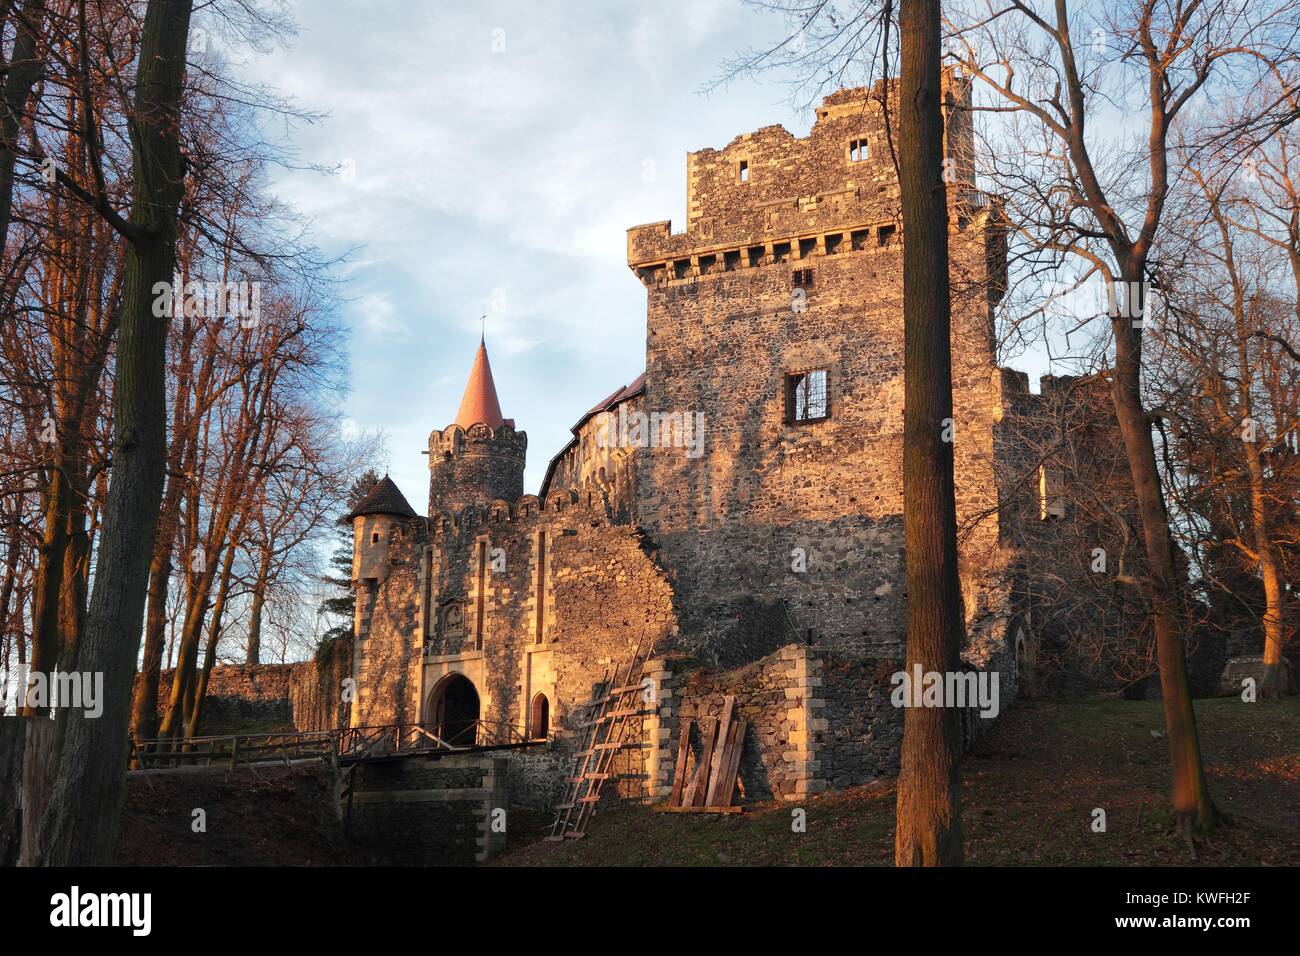 Grodziec chateau in Poland Stock Photo